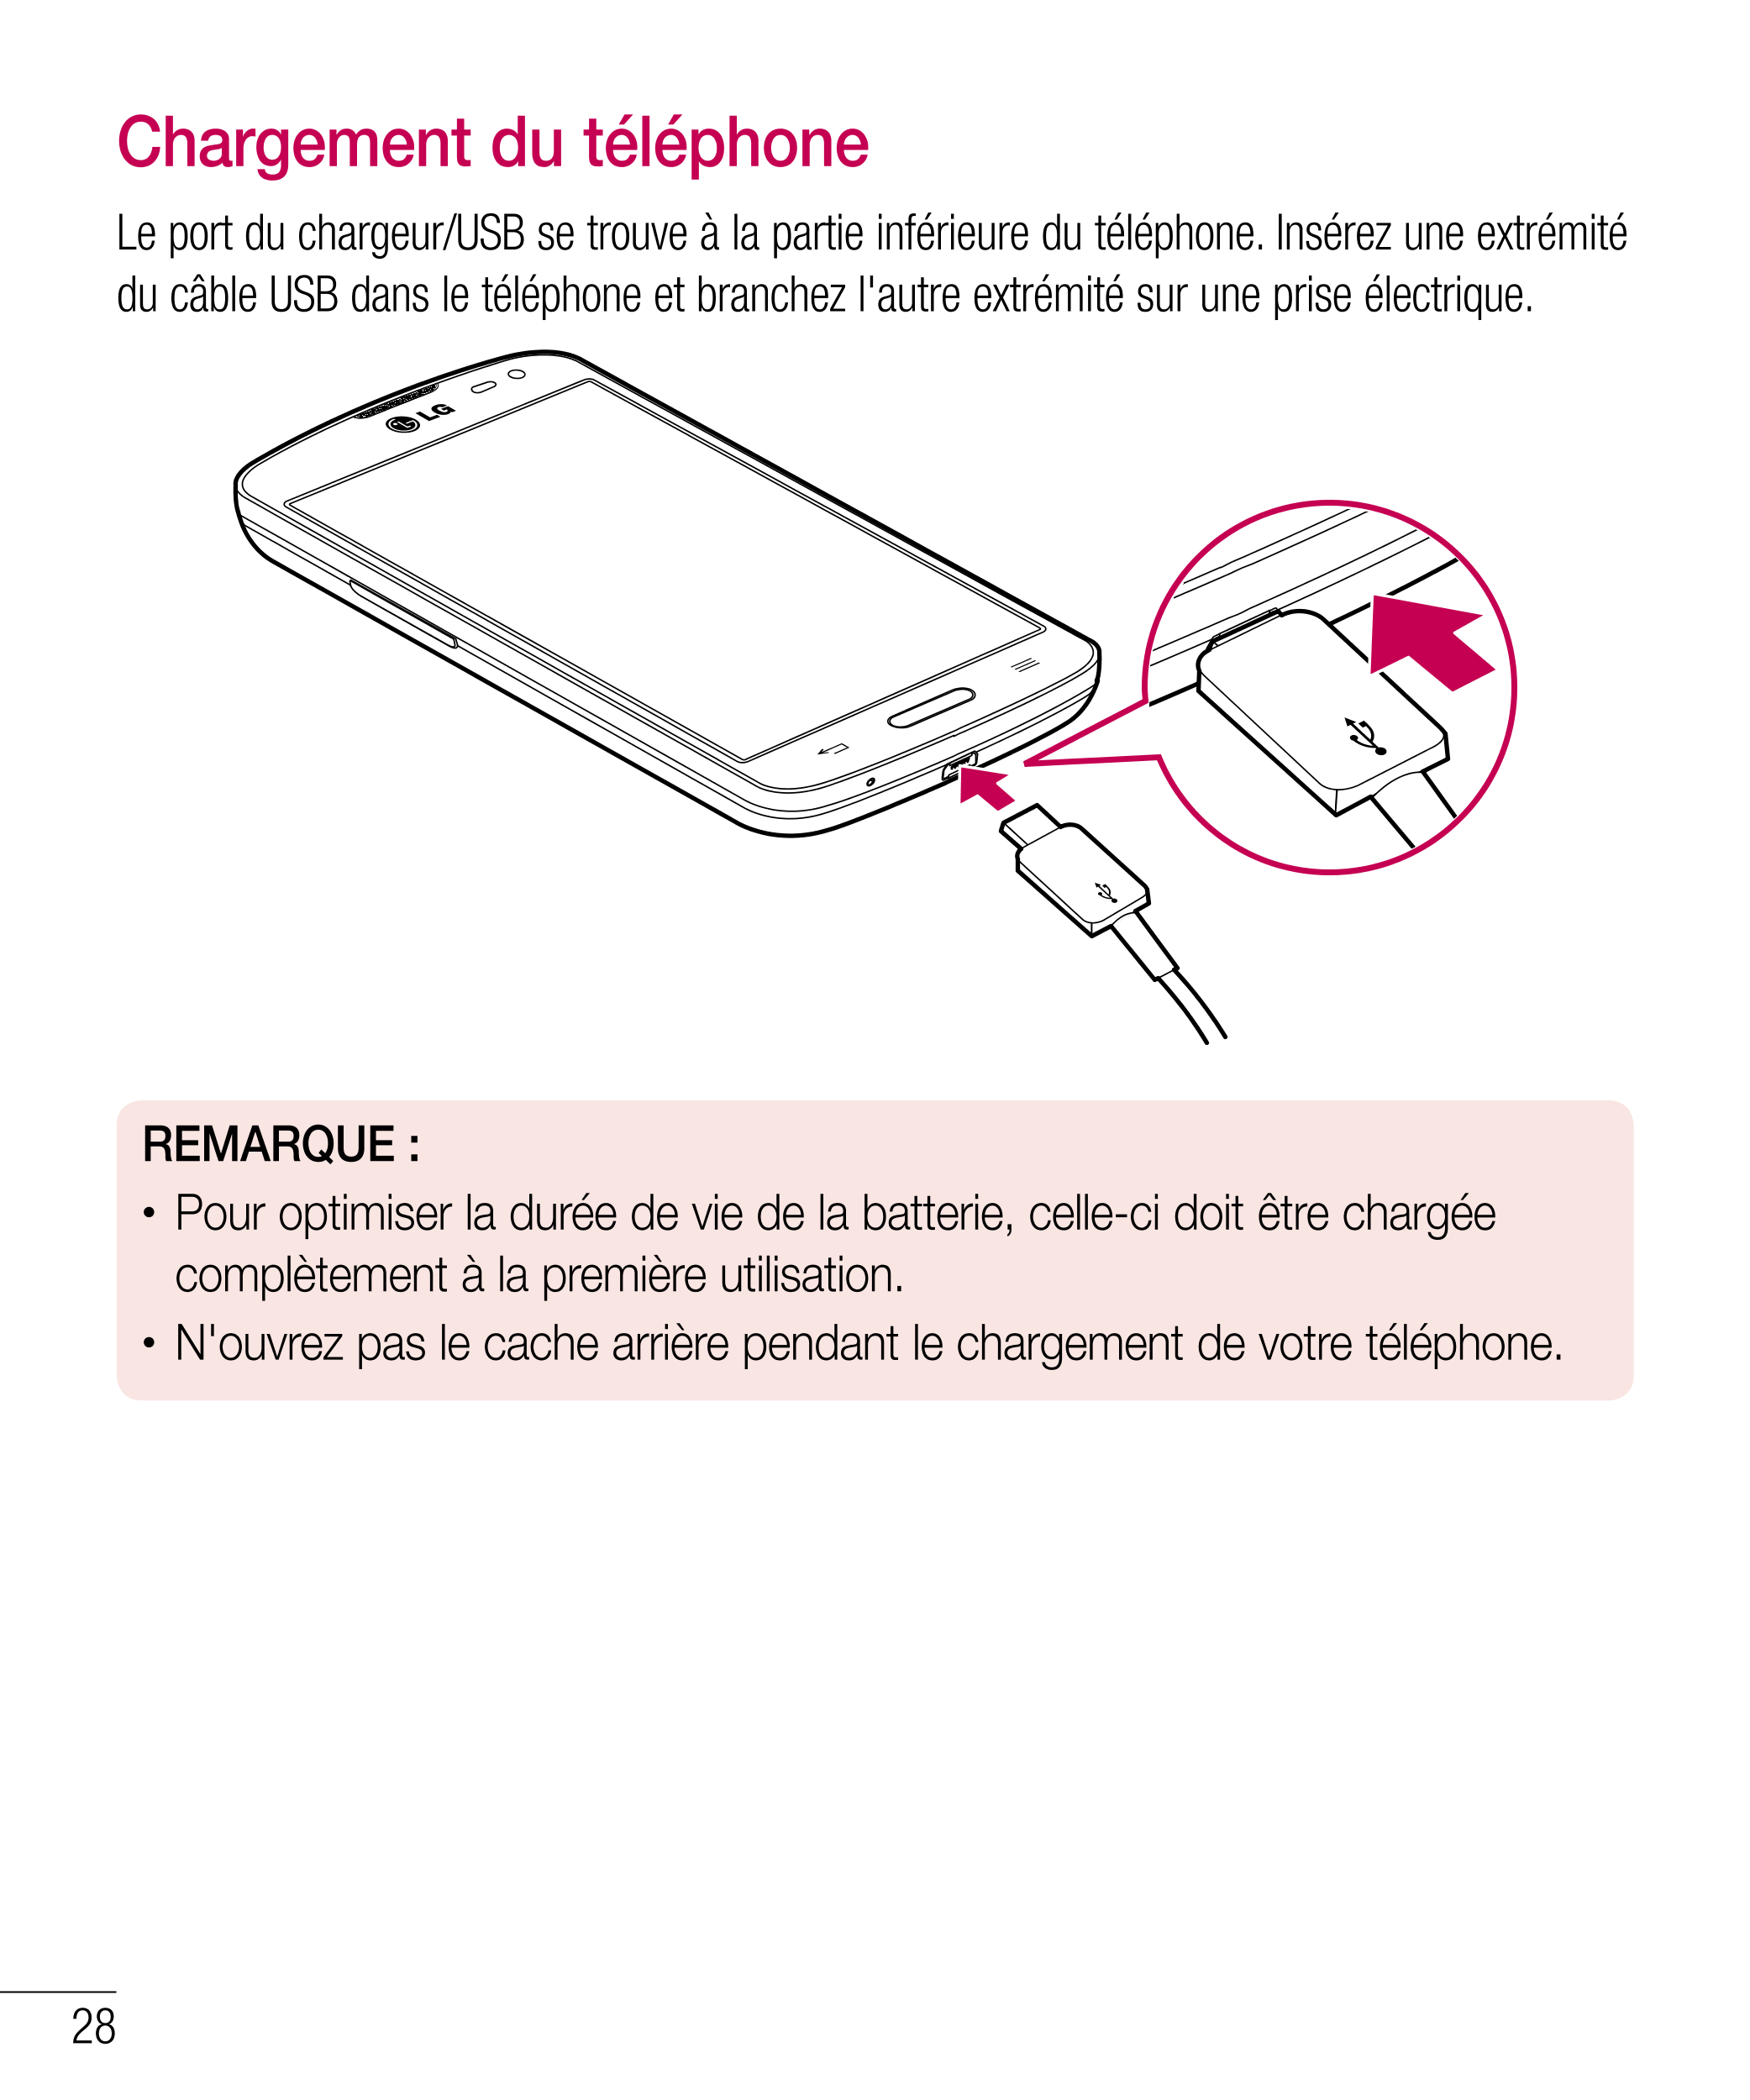 Chargement du téléphone
Le port du chargeur/USB se trouve à la partie inférieure du téléphone. Insérez une extrémité 
du câble U